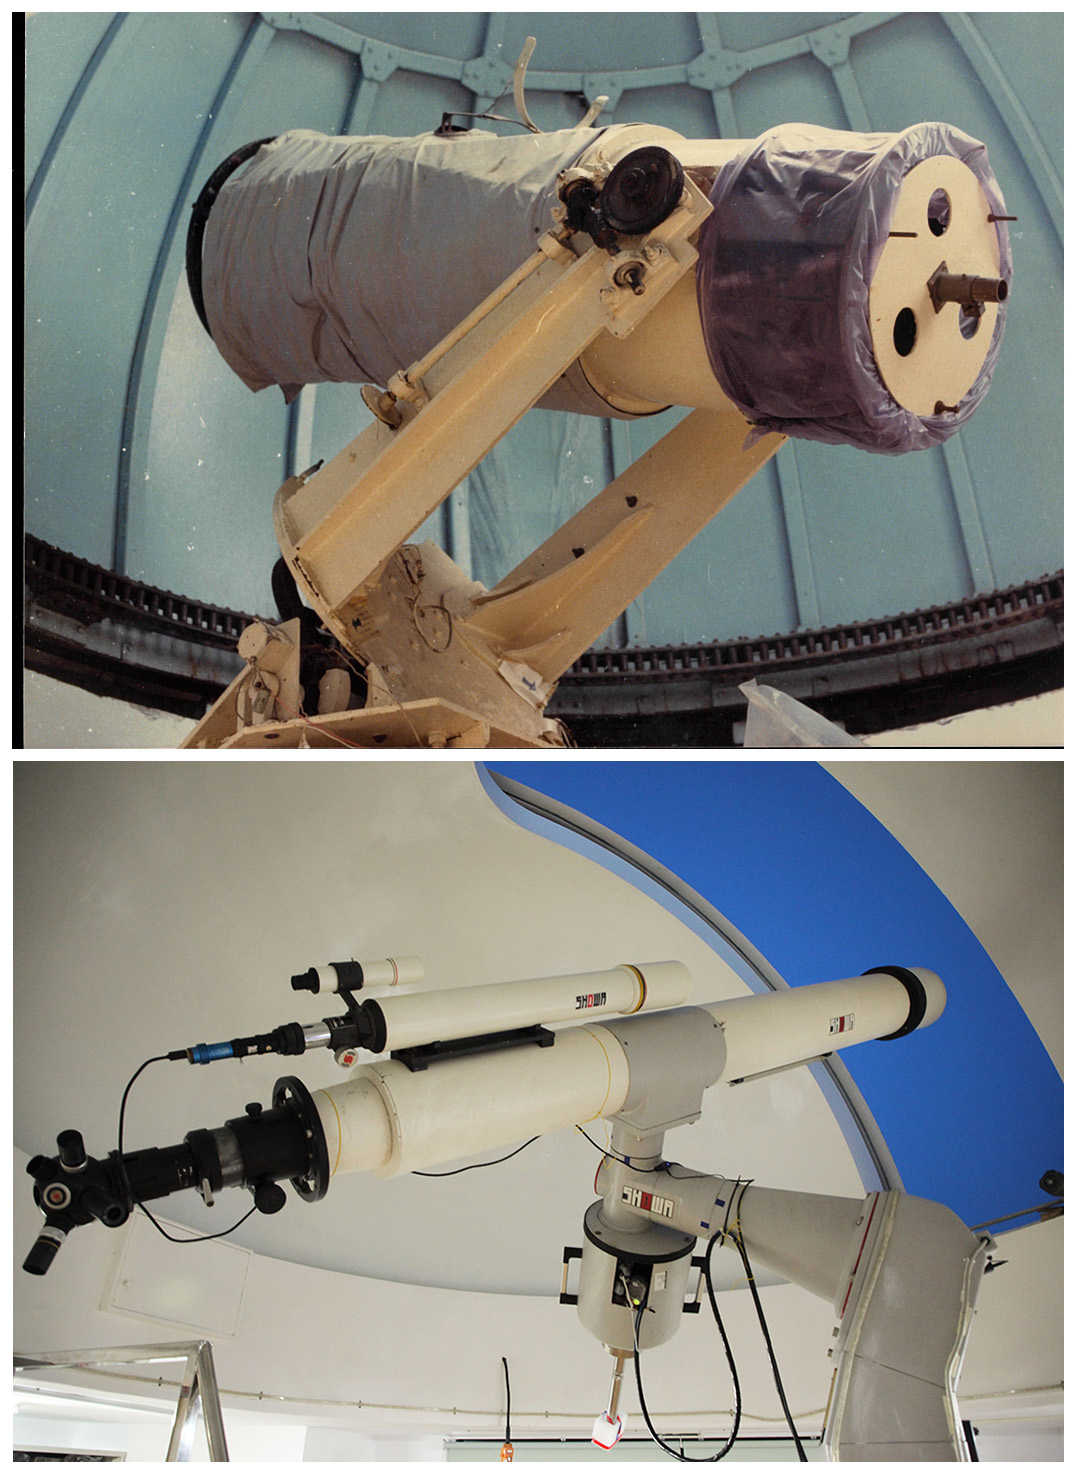 上圖：1971 年 16 吋自製卡式望遠鏡為當年全國最大口徑、下圖：1988 年～今，25 公分折射式望遠鏡為全國最大口徑之折射鏡